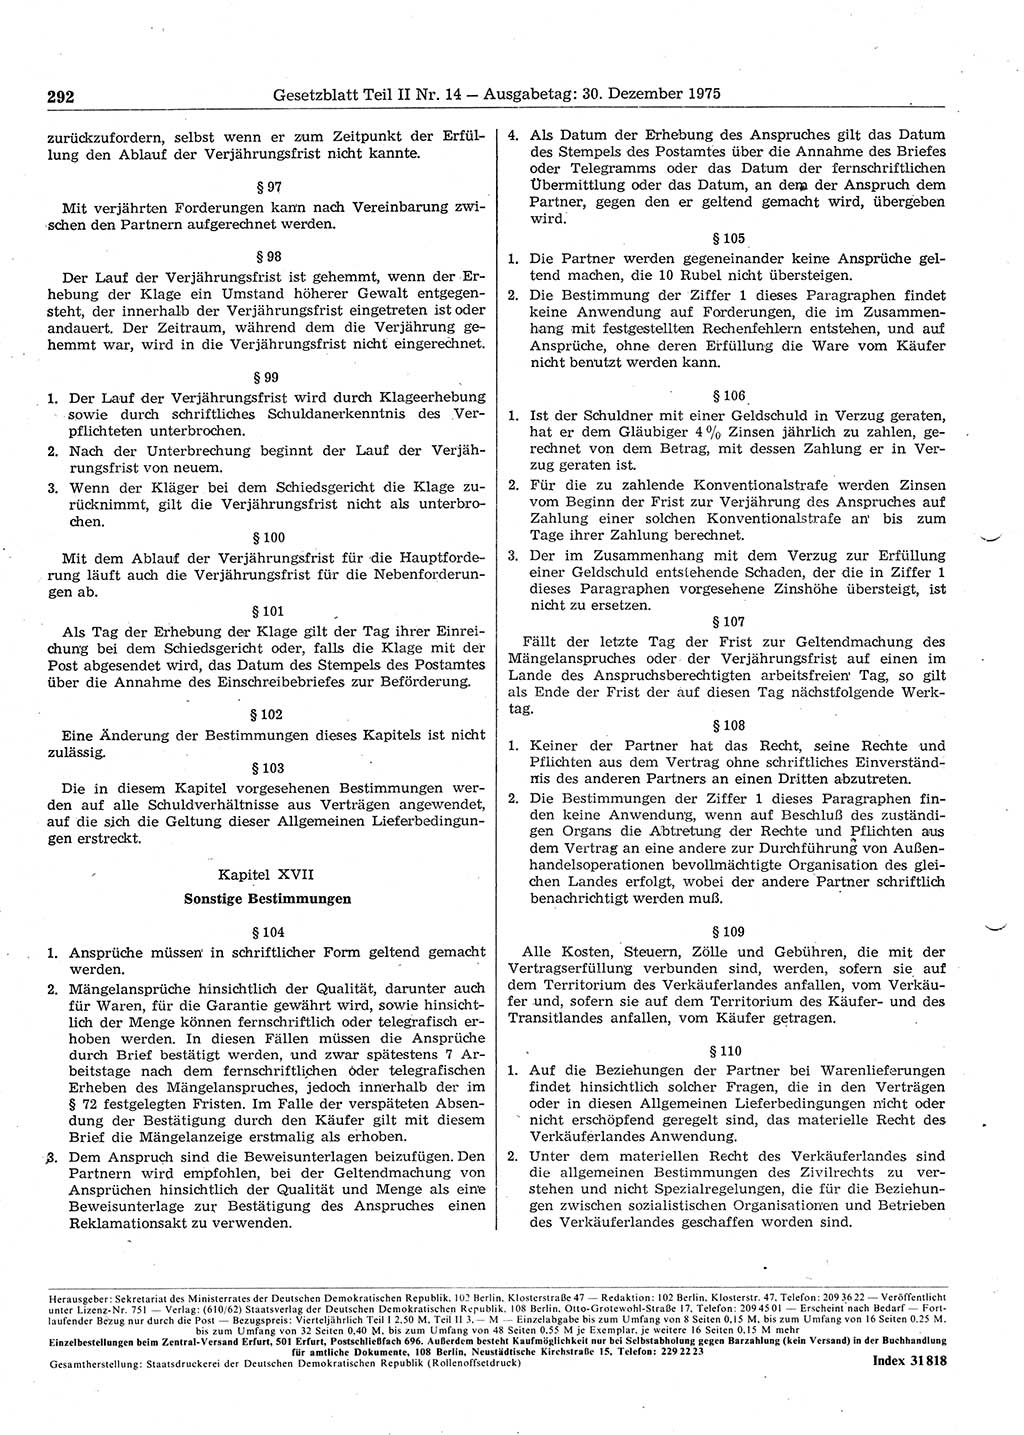 Gesetzblatt (GBl.) der Deutschen Demokratischen Republik (DDR) Teil ⅠⅠ 1975, Seite 292 (GBl. DDR ⅠⅠ 1975, S. 292)